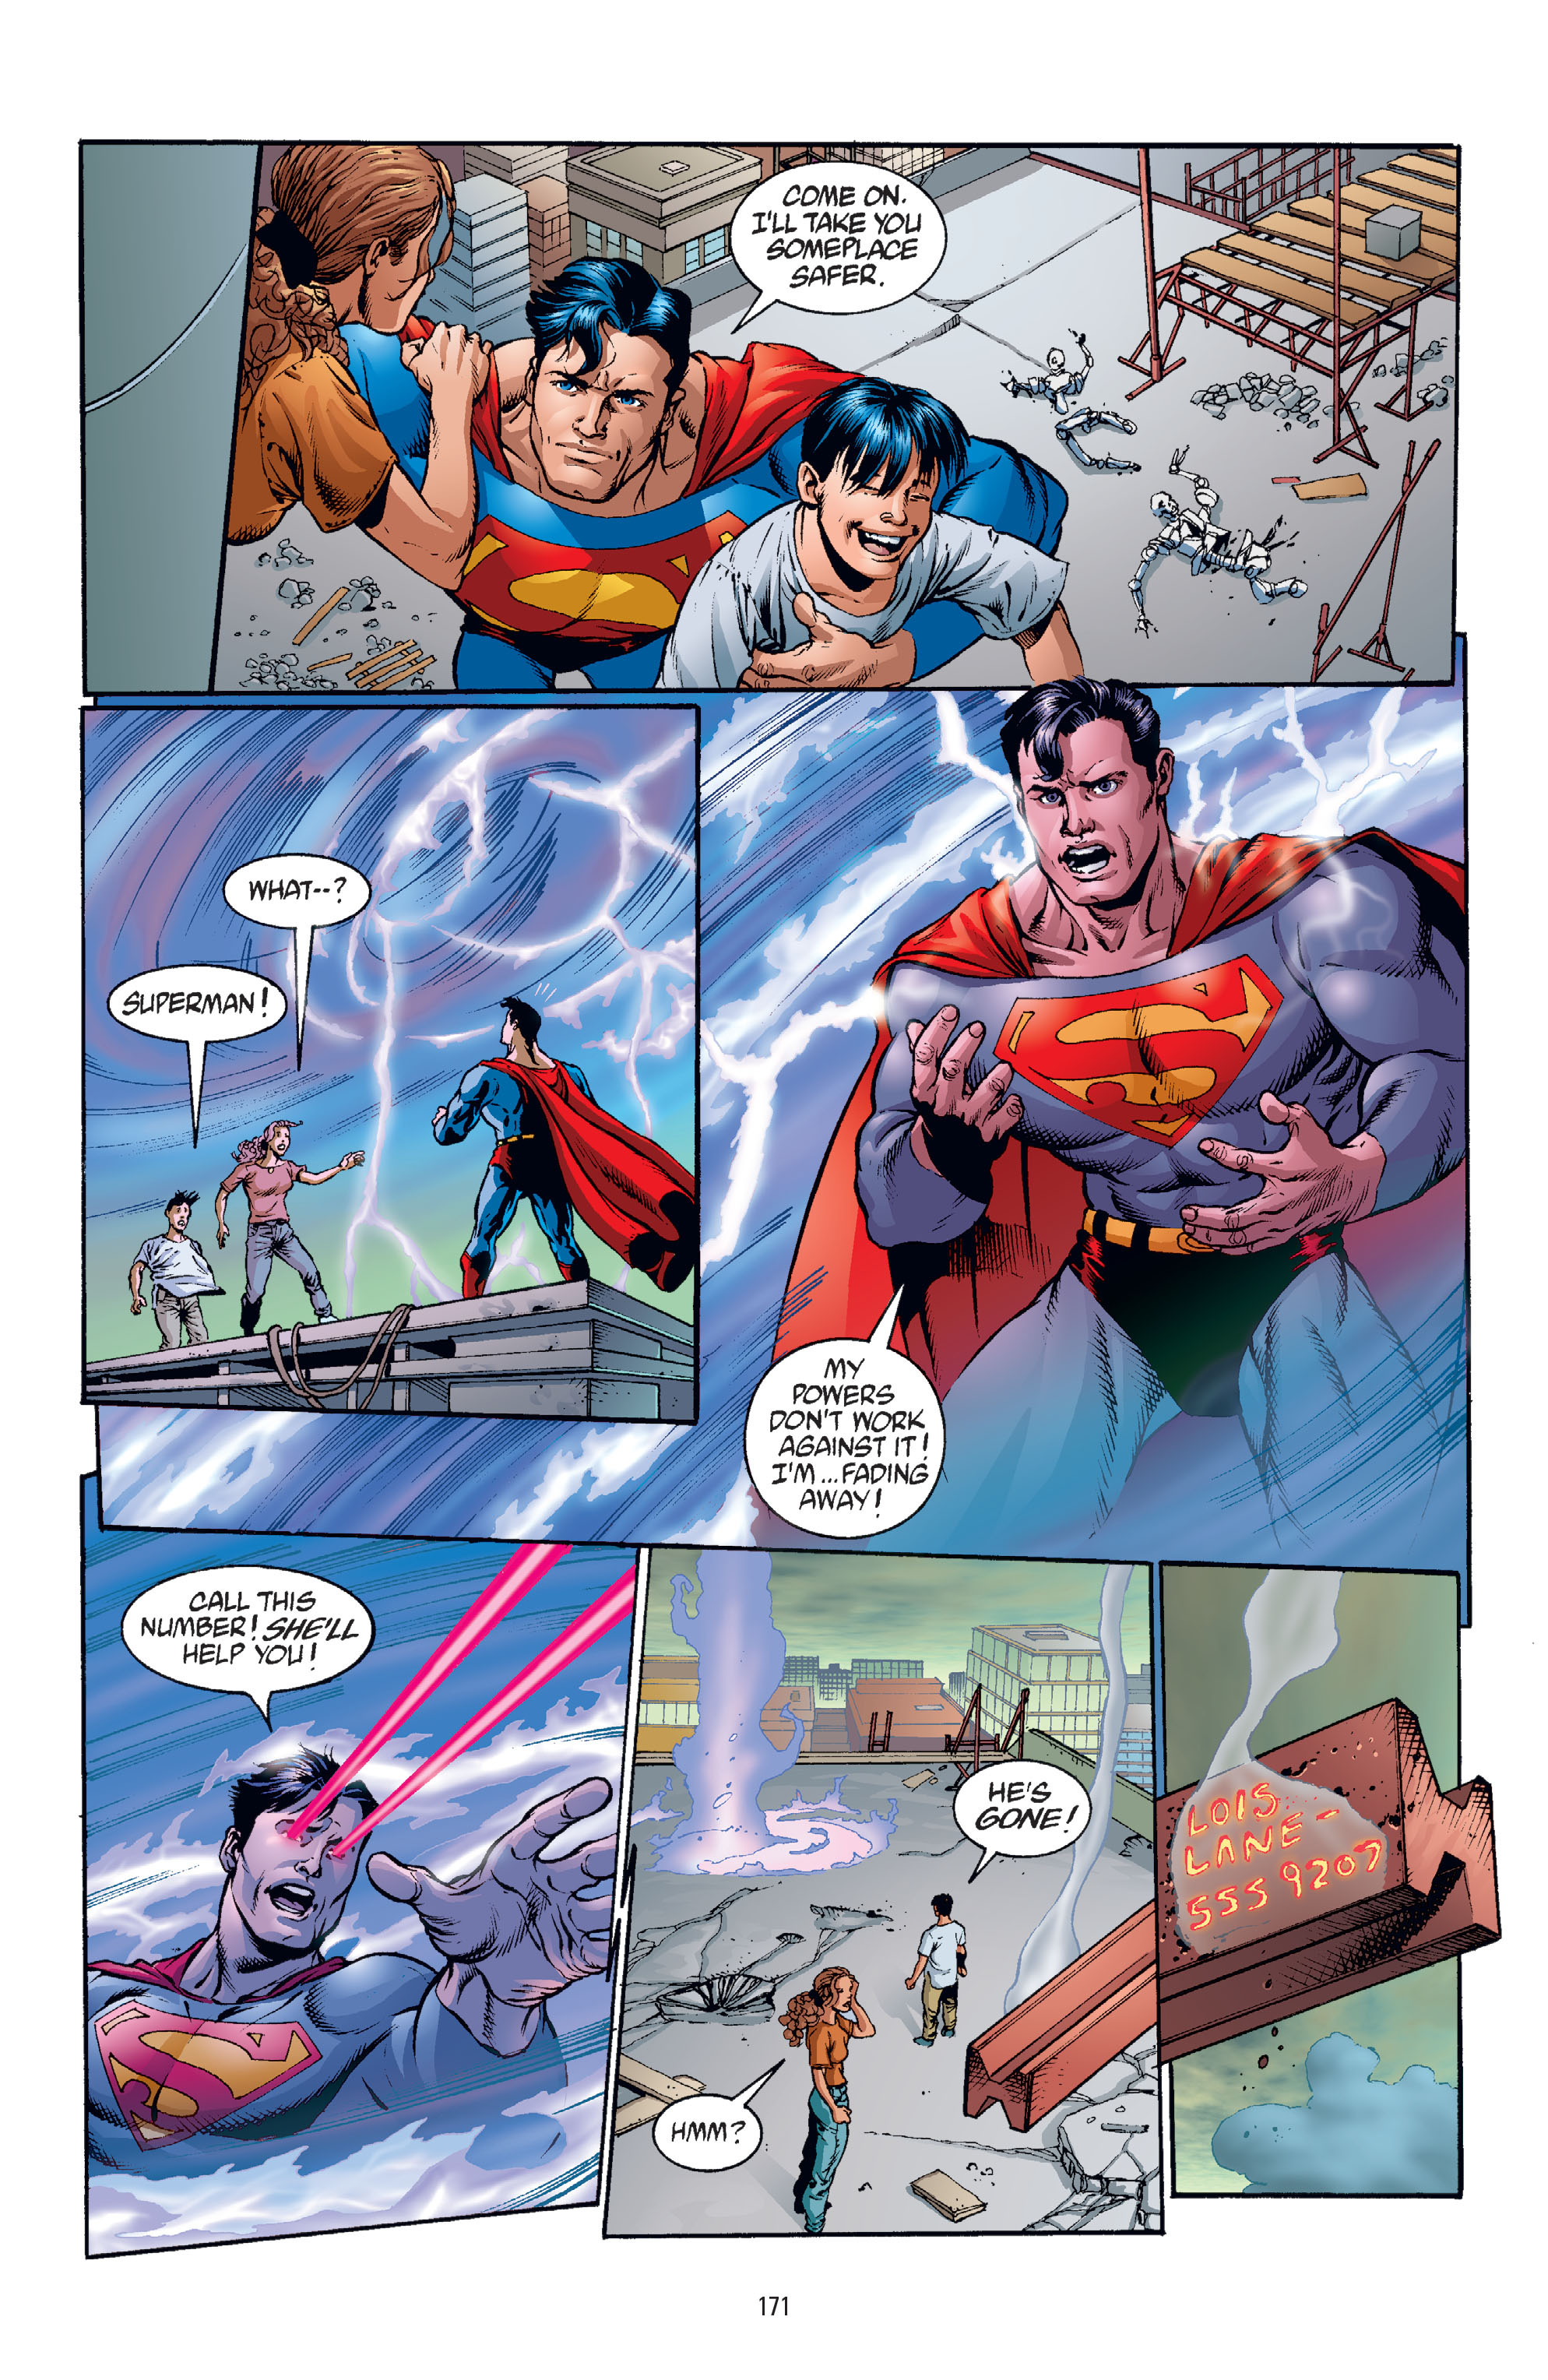 DC Comics/Dark Horse Comics: Justice League Full #1 - English 167